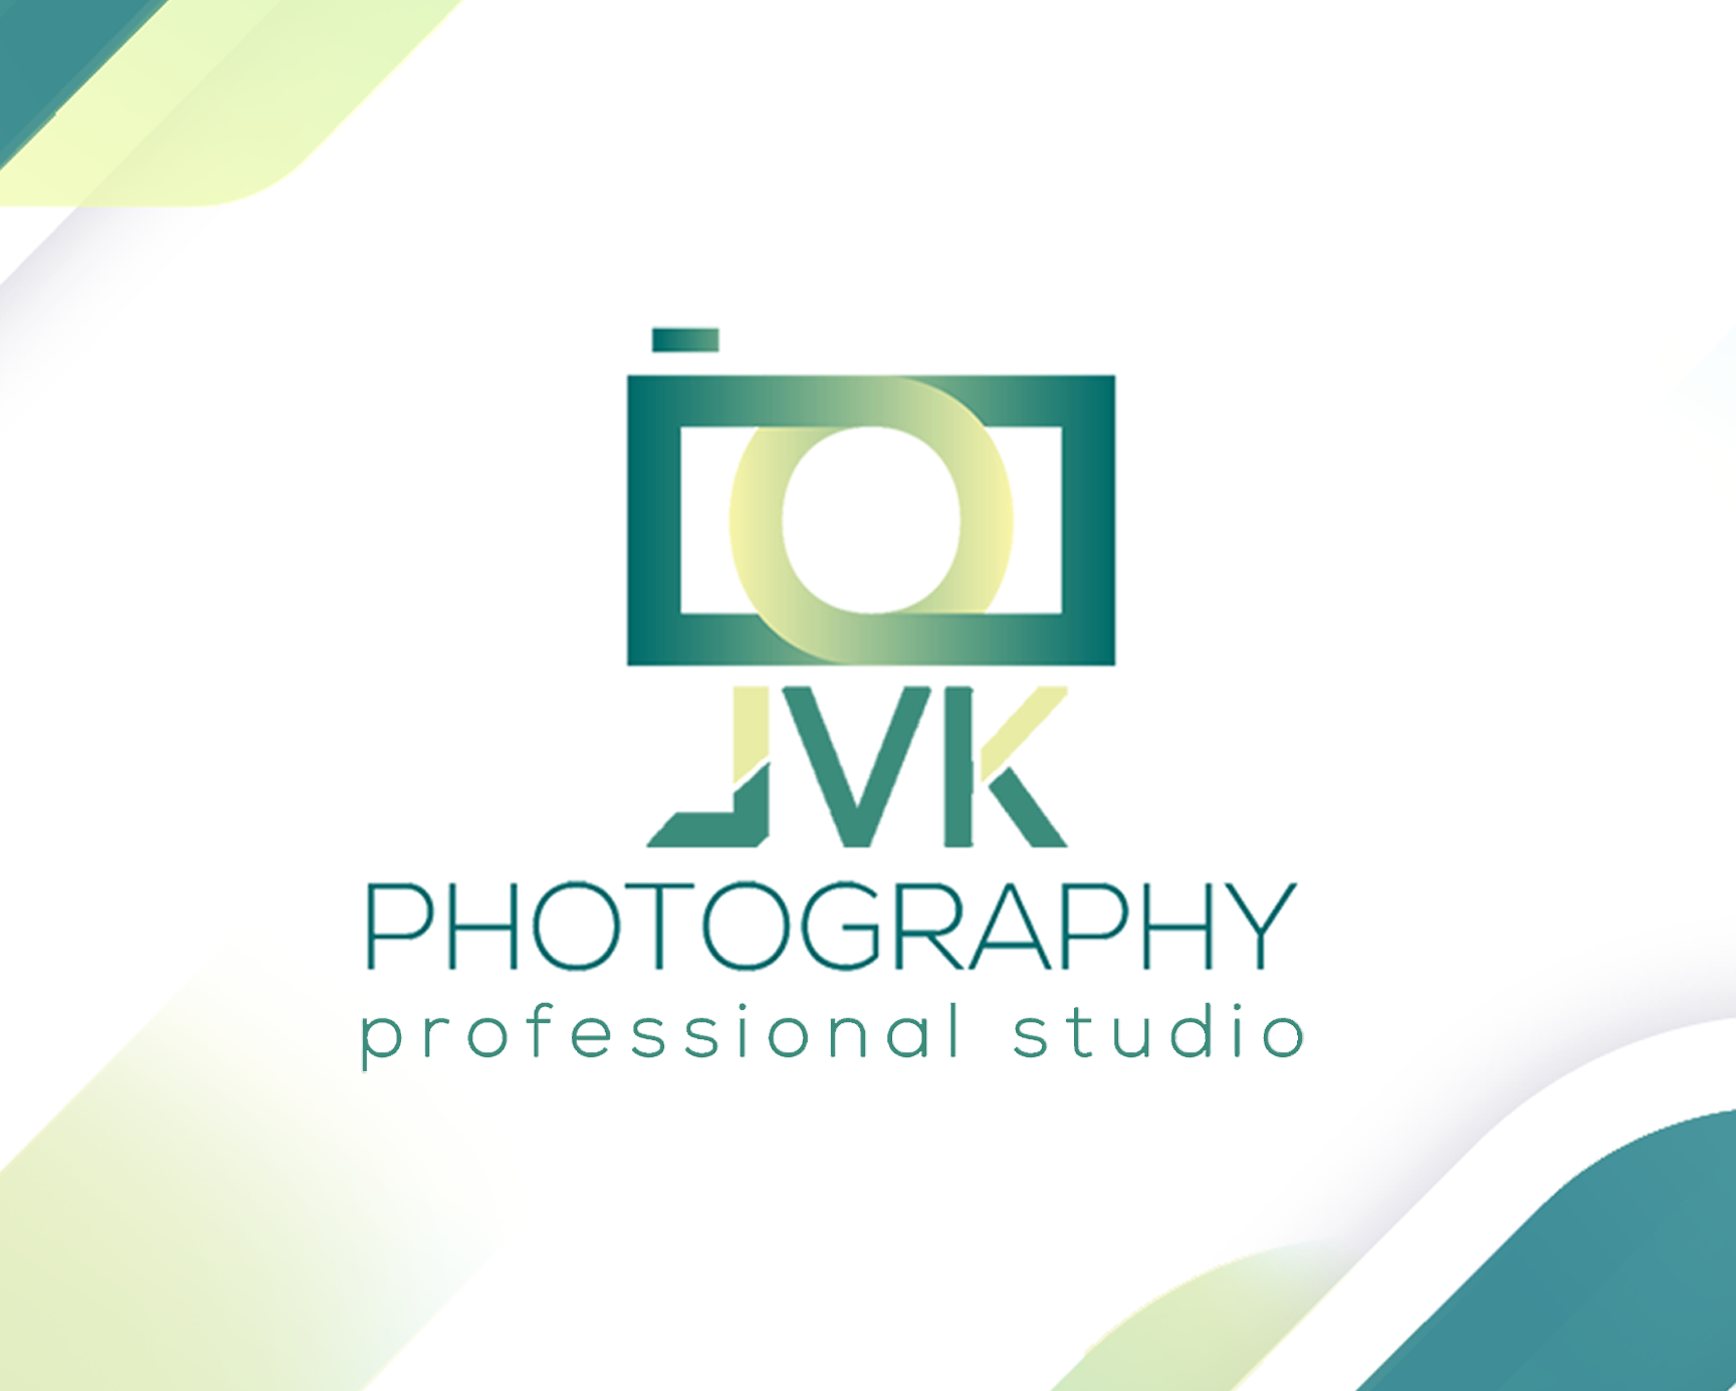 Jvk Photography